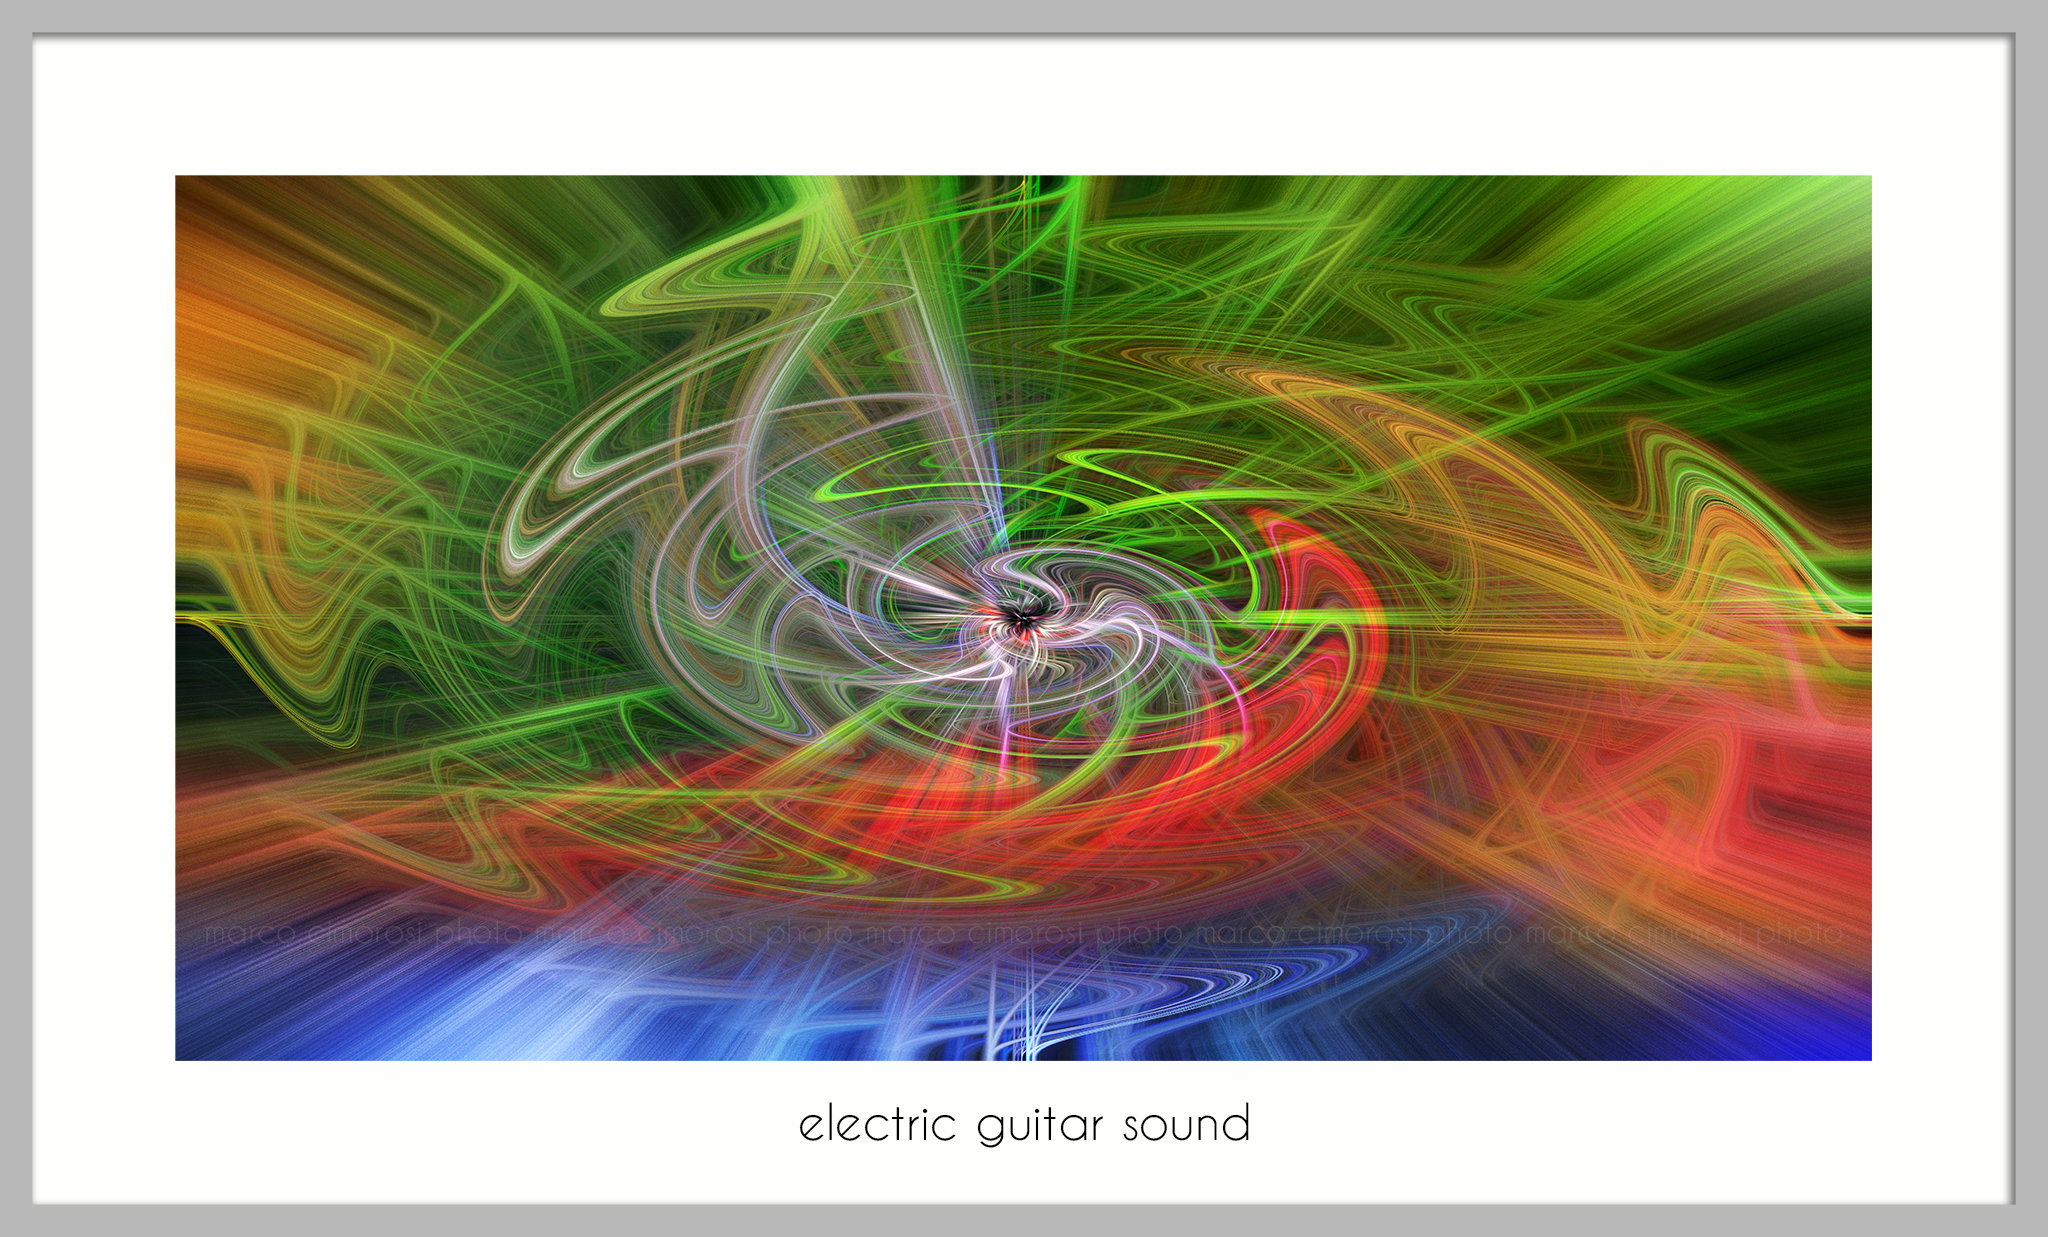 Eletric guitar sound...